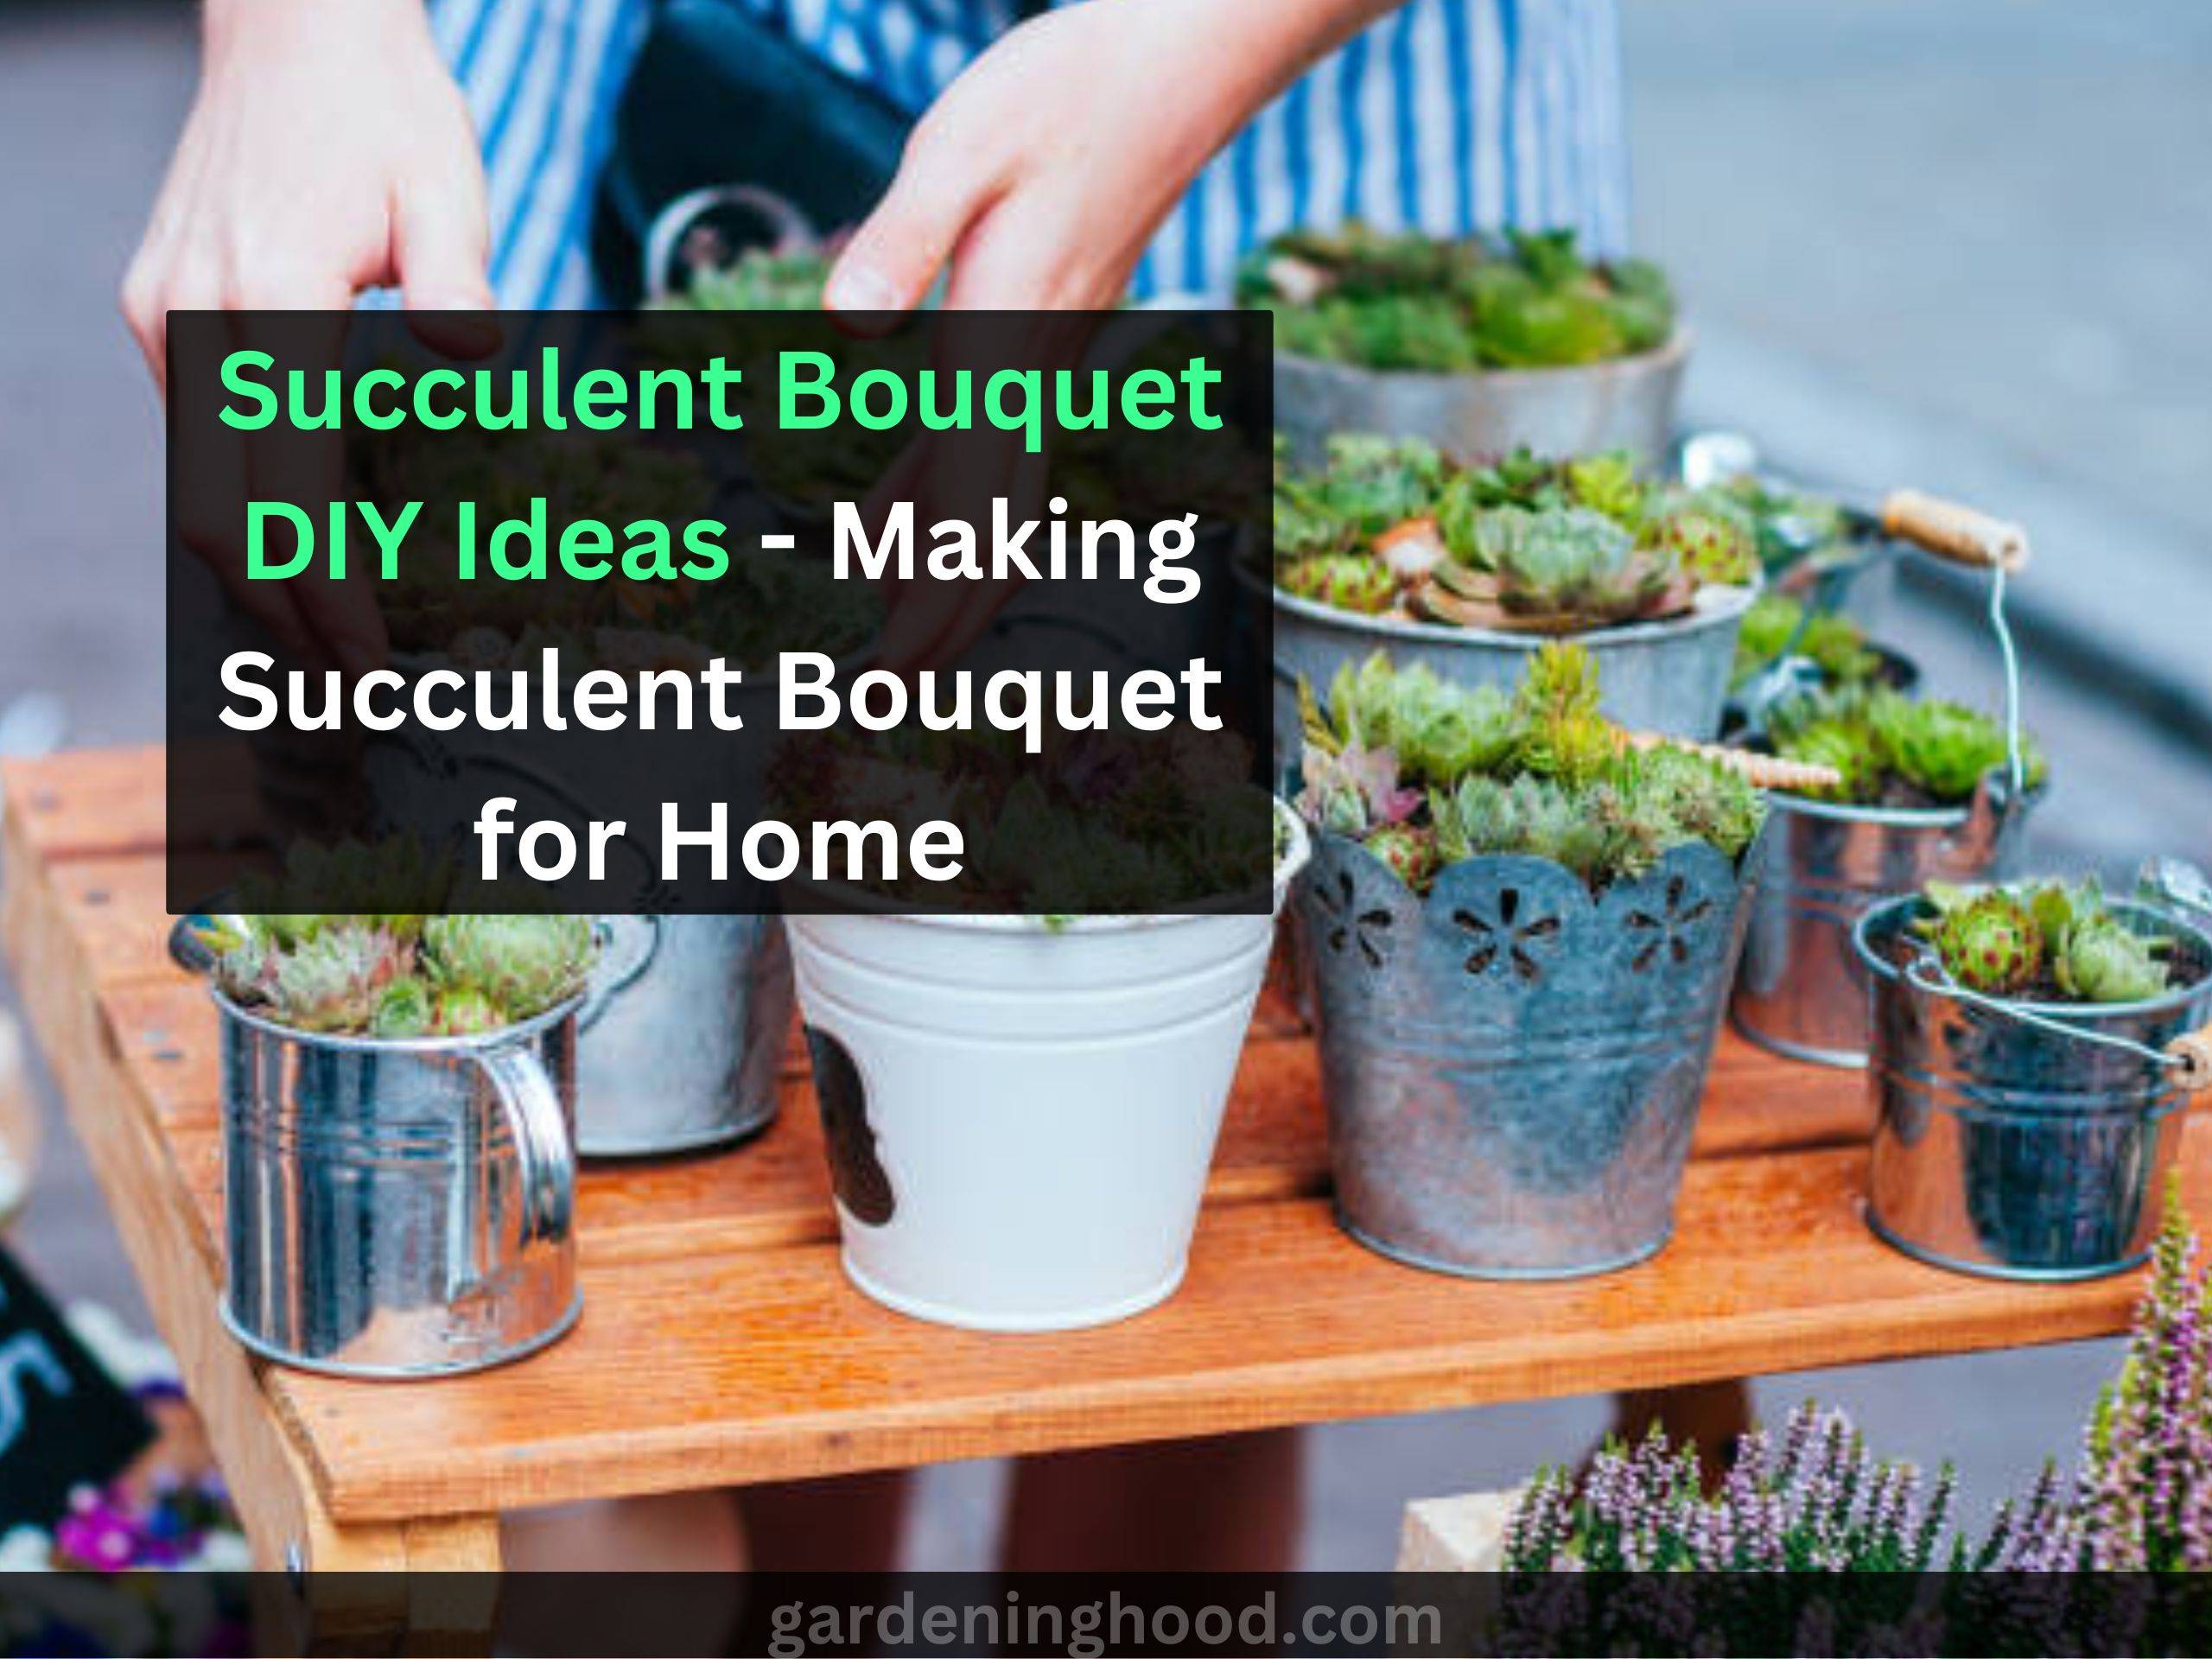 Succulent Bouquet DIY Ideas - Making Succulent Bouquet for Home